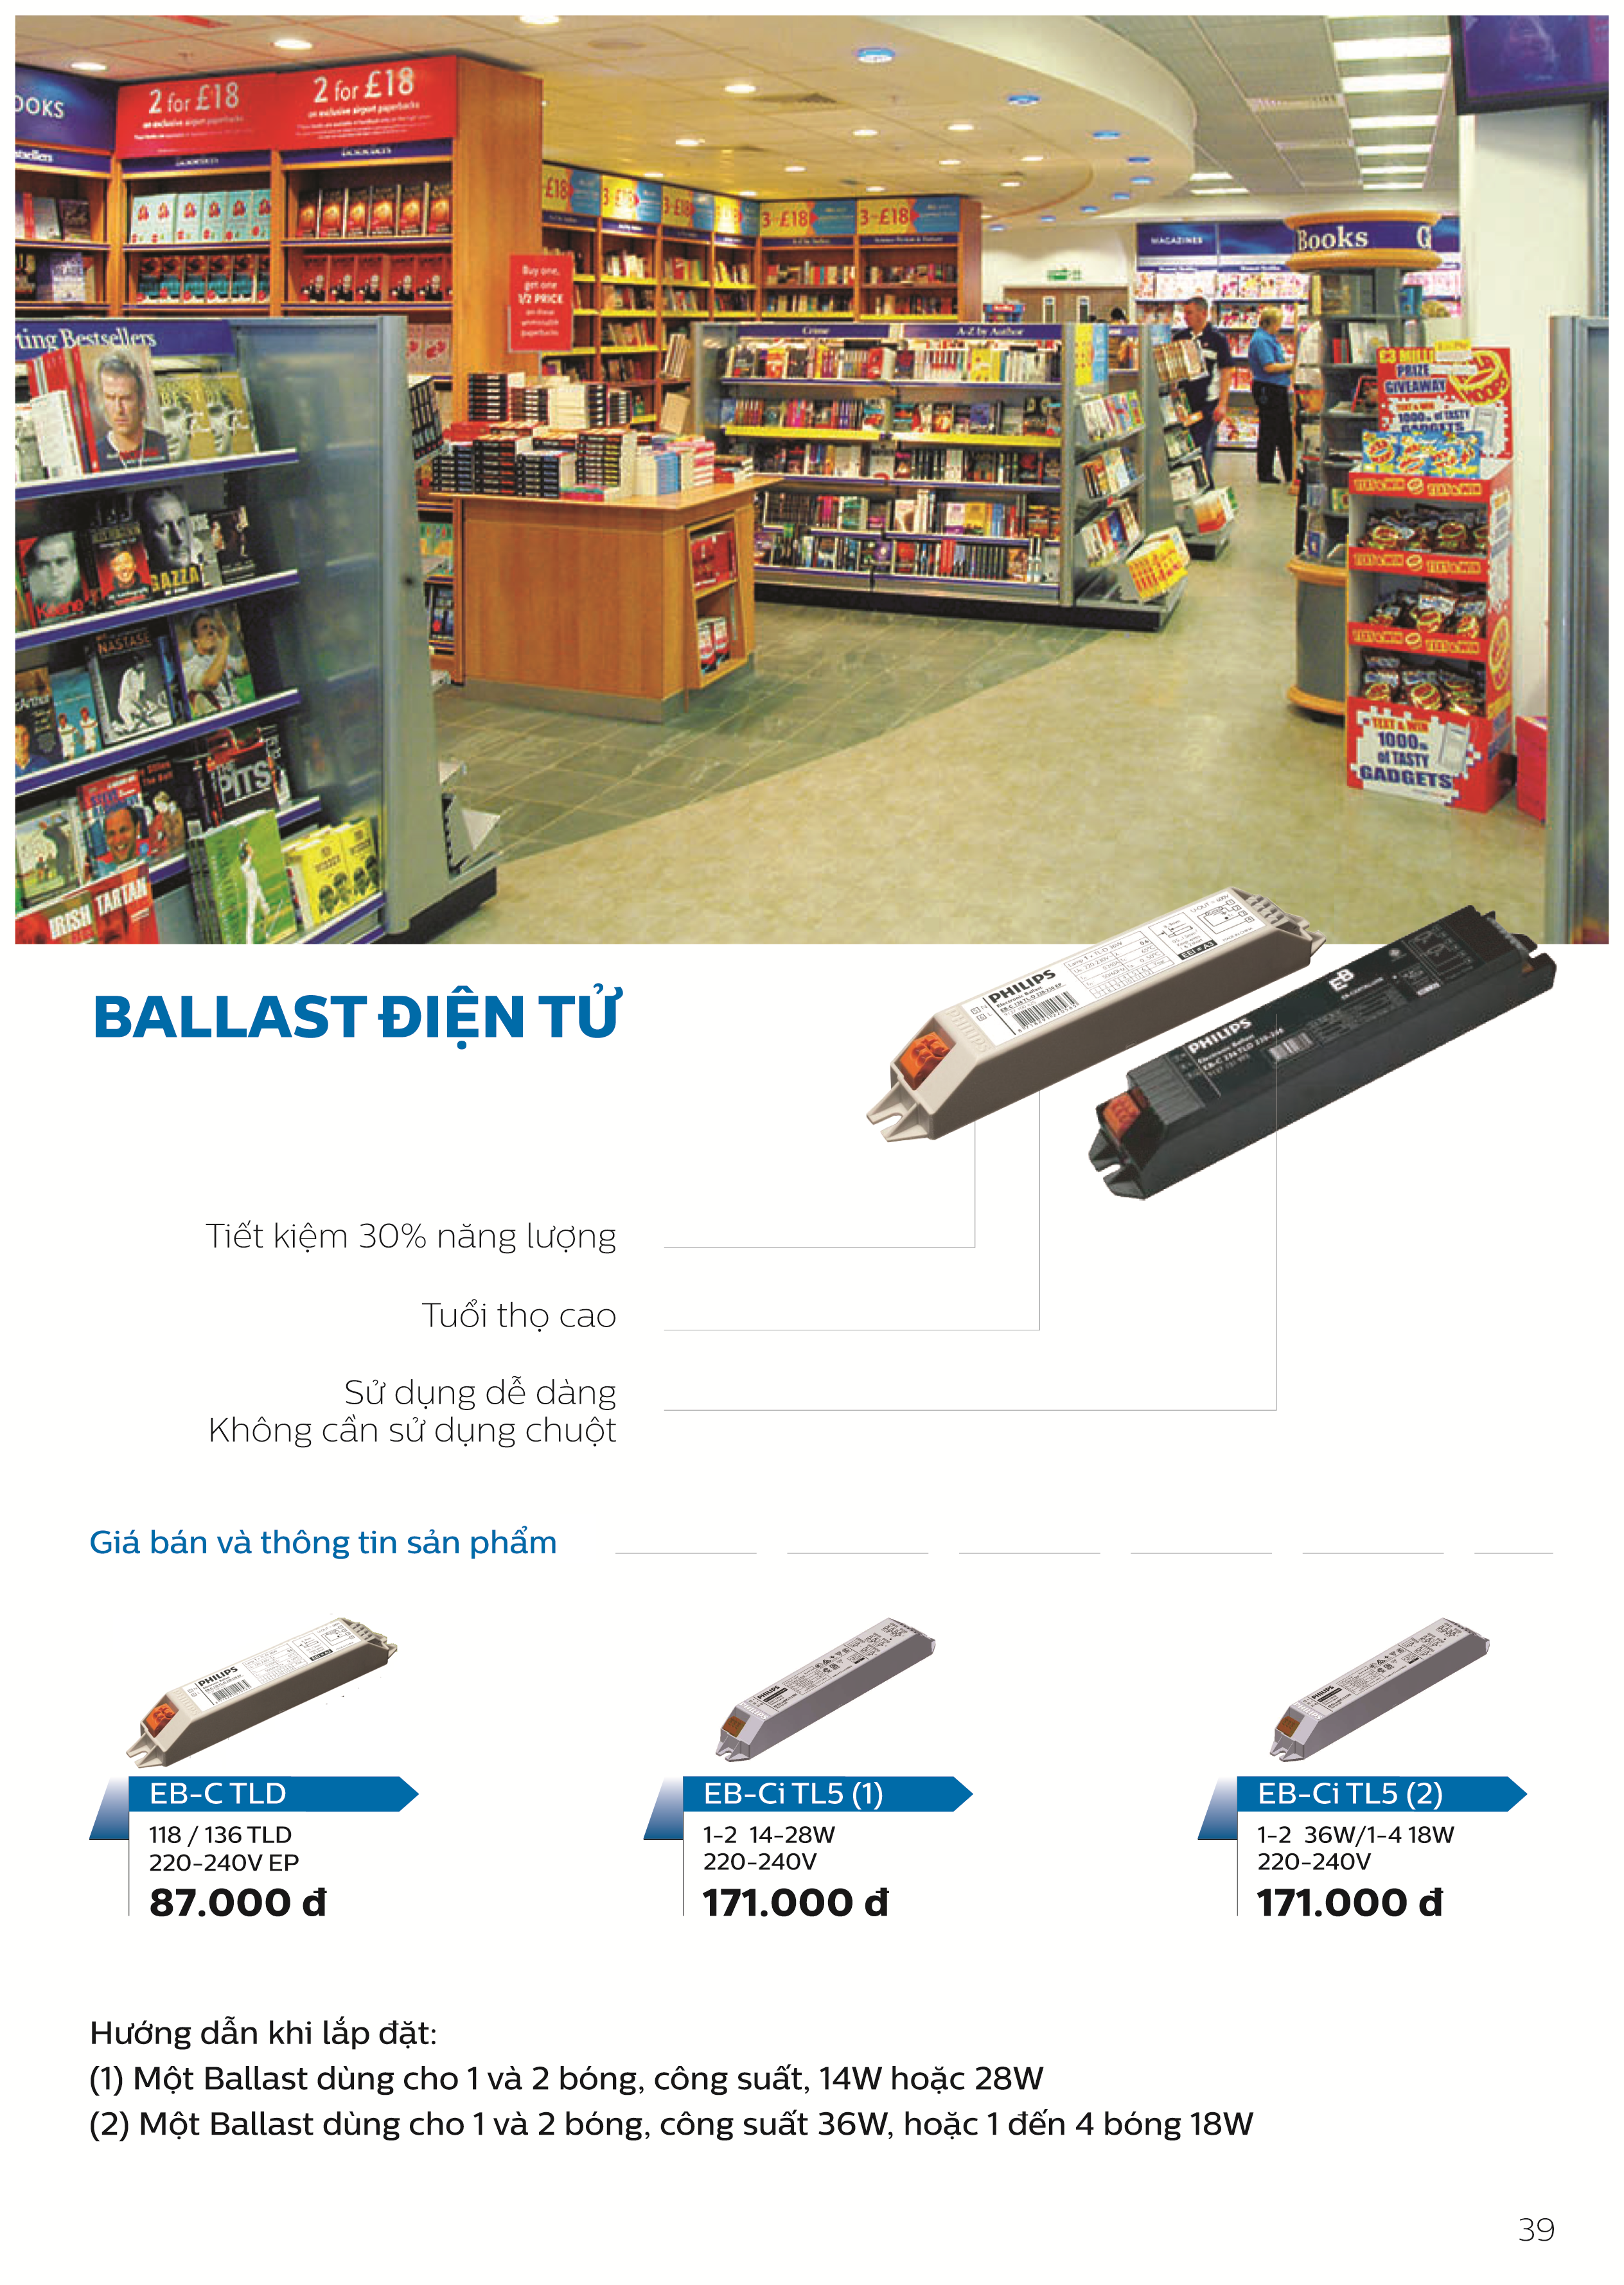 Ballast / Tăng phô/ Chấn lưu điện tử Philips EB-Ci 1-2 36W / 1-4 18W 220-240v 50/60Hz